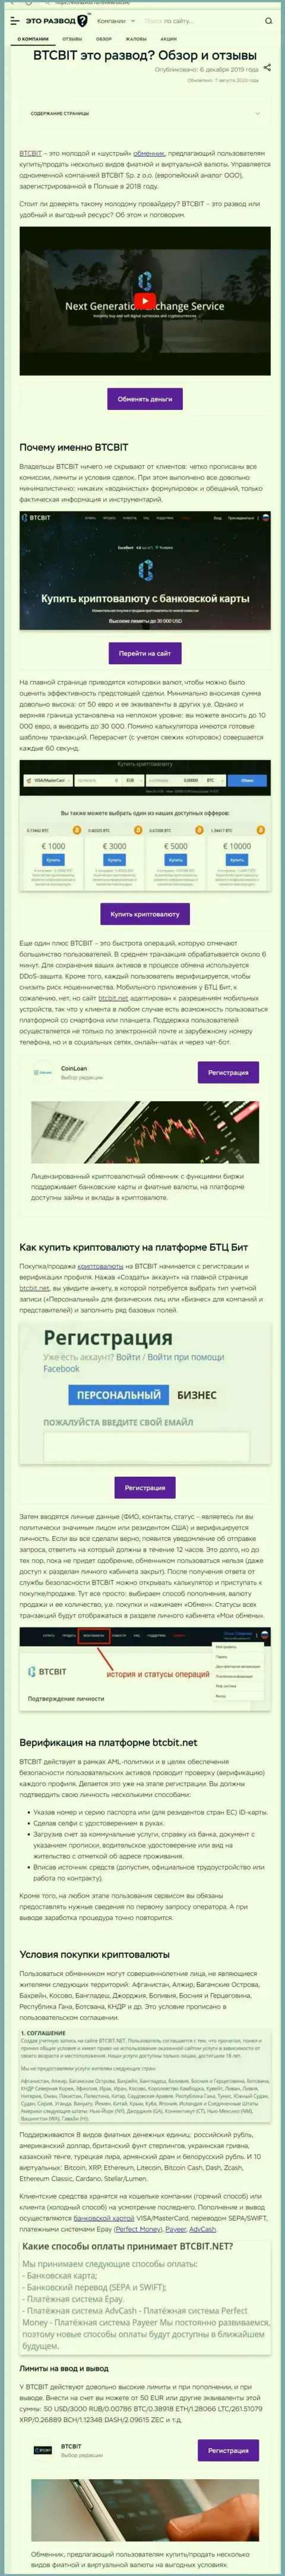 Статья с информационным обзором компании BTC Bit на информационном сервисе EtoRazvod Ru